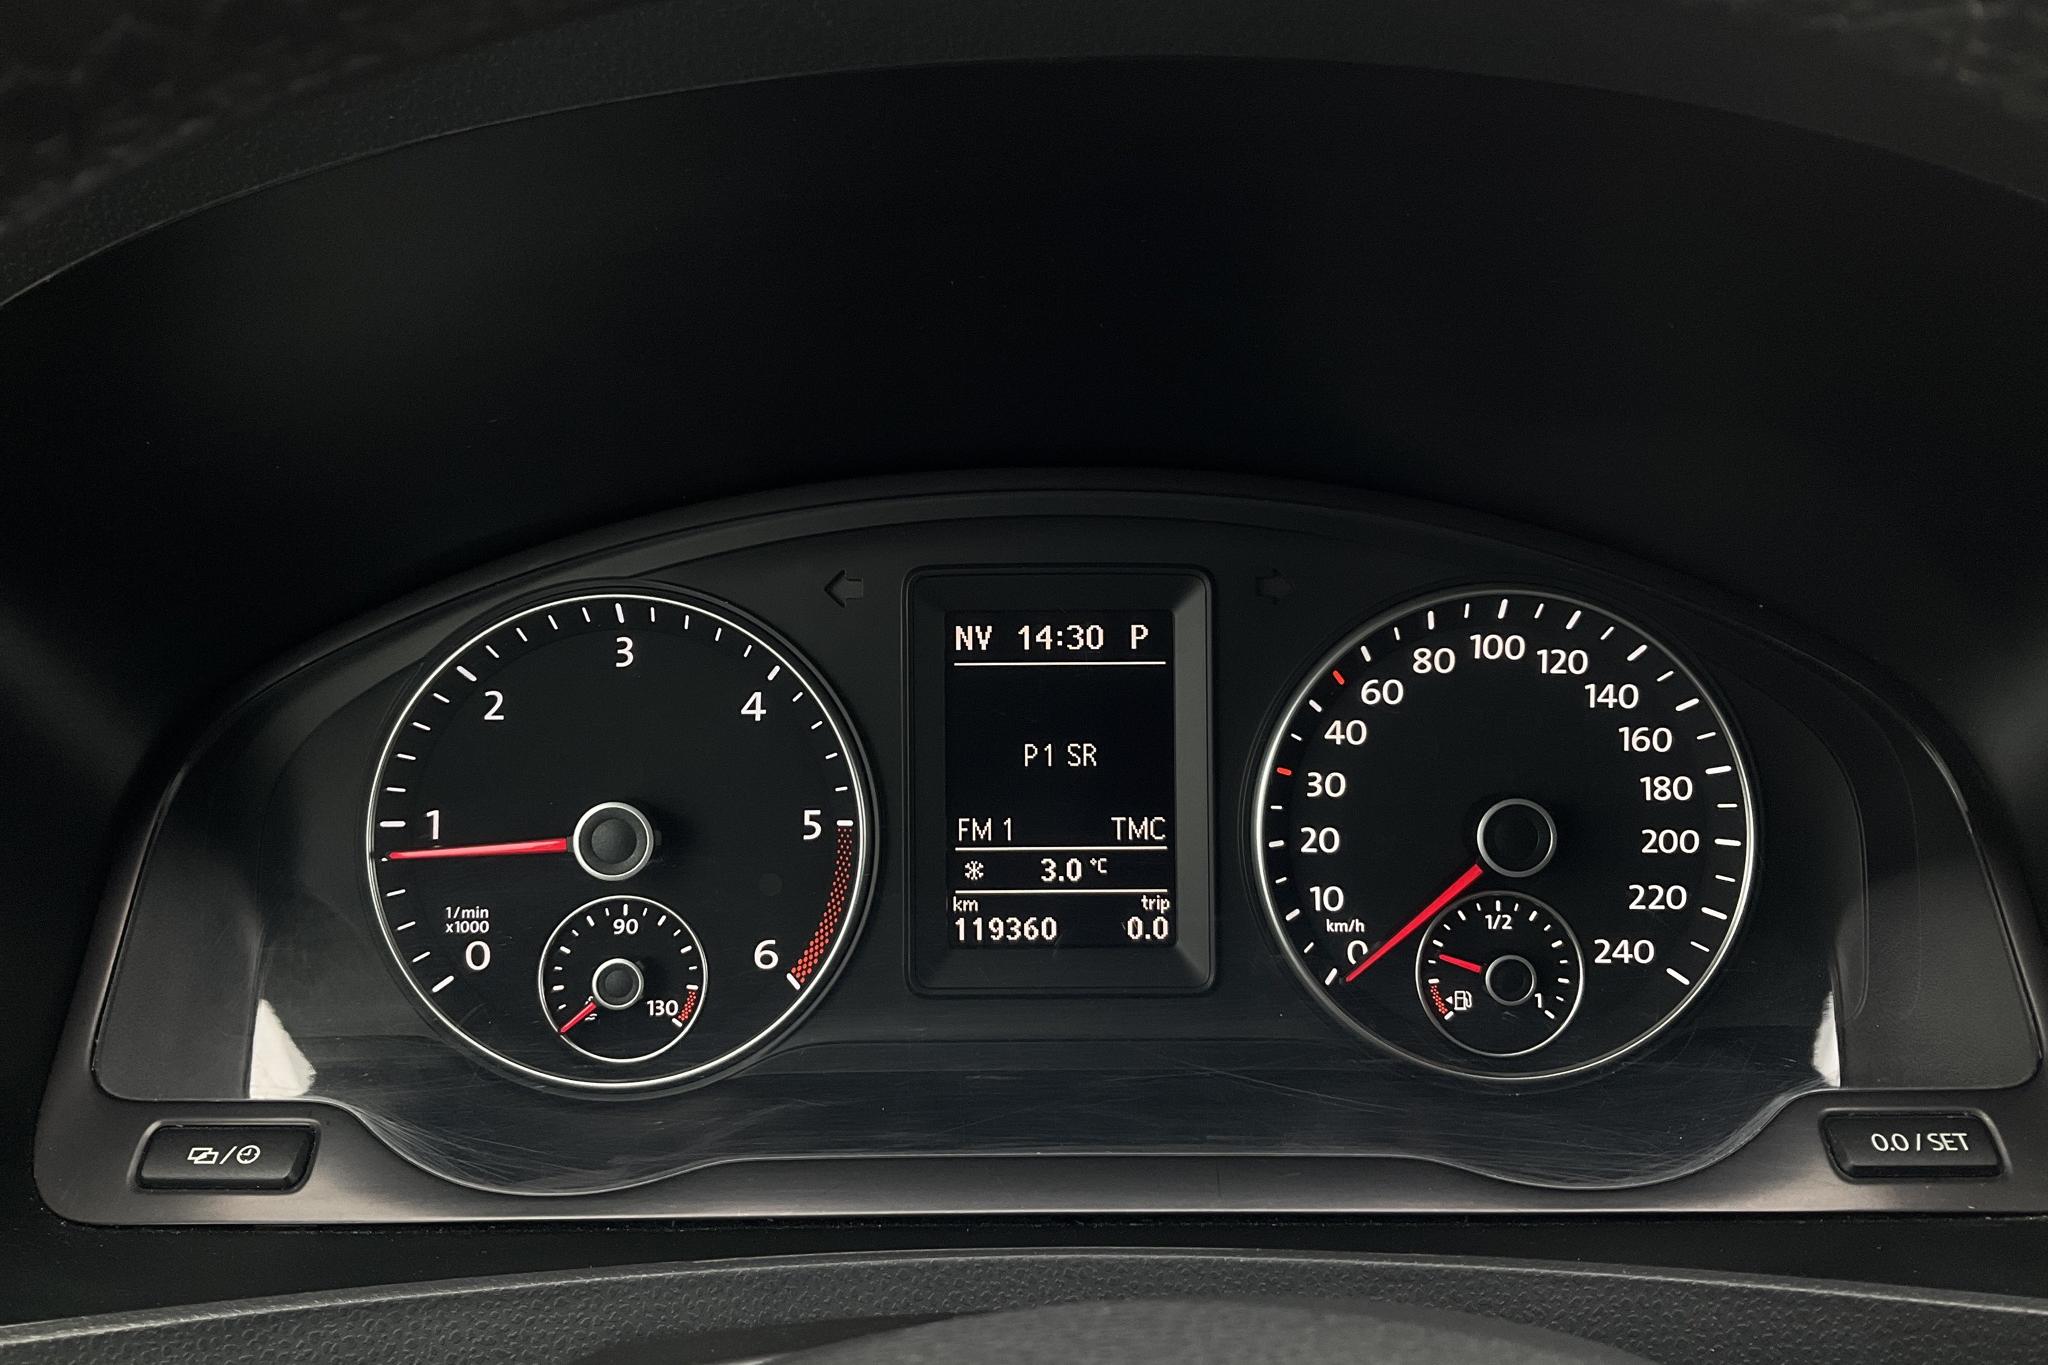 VW Caravelle T5 2.0 TDI (140hk) - 11 936 mil - Automat - svart - 2015